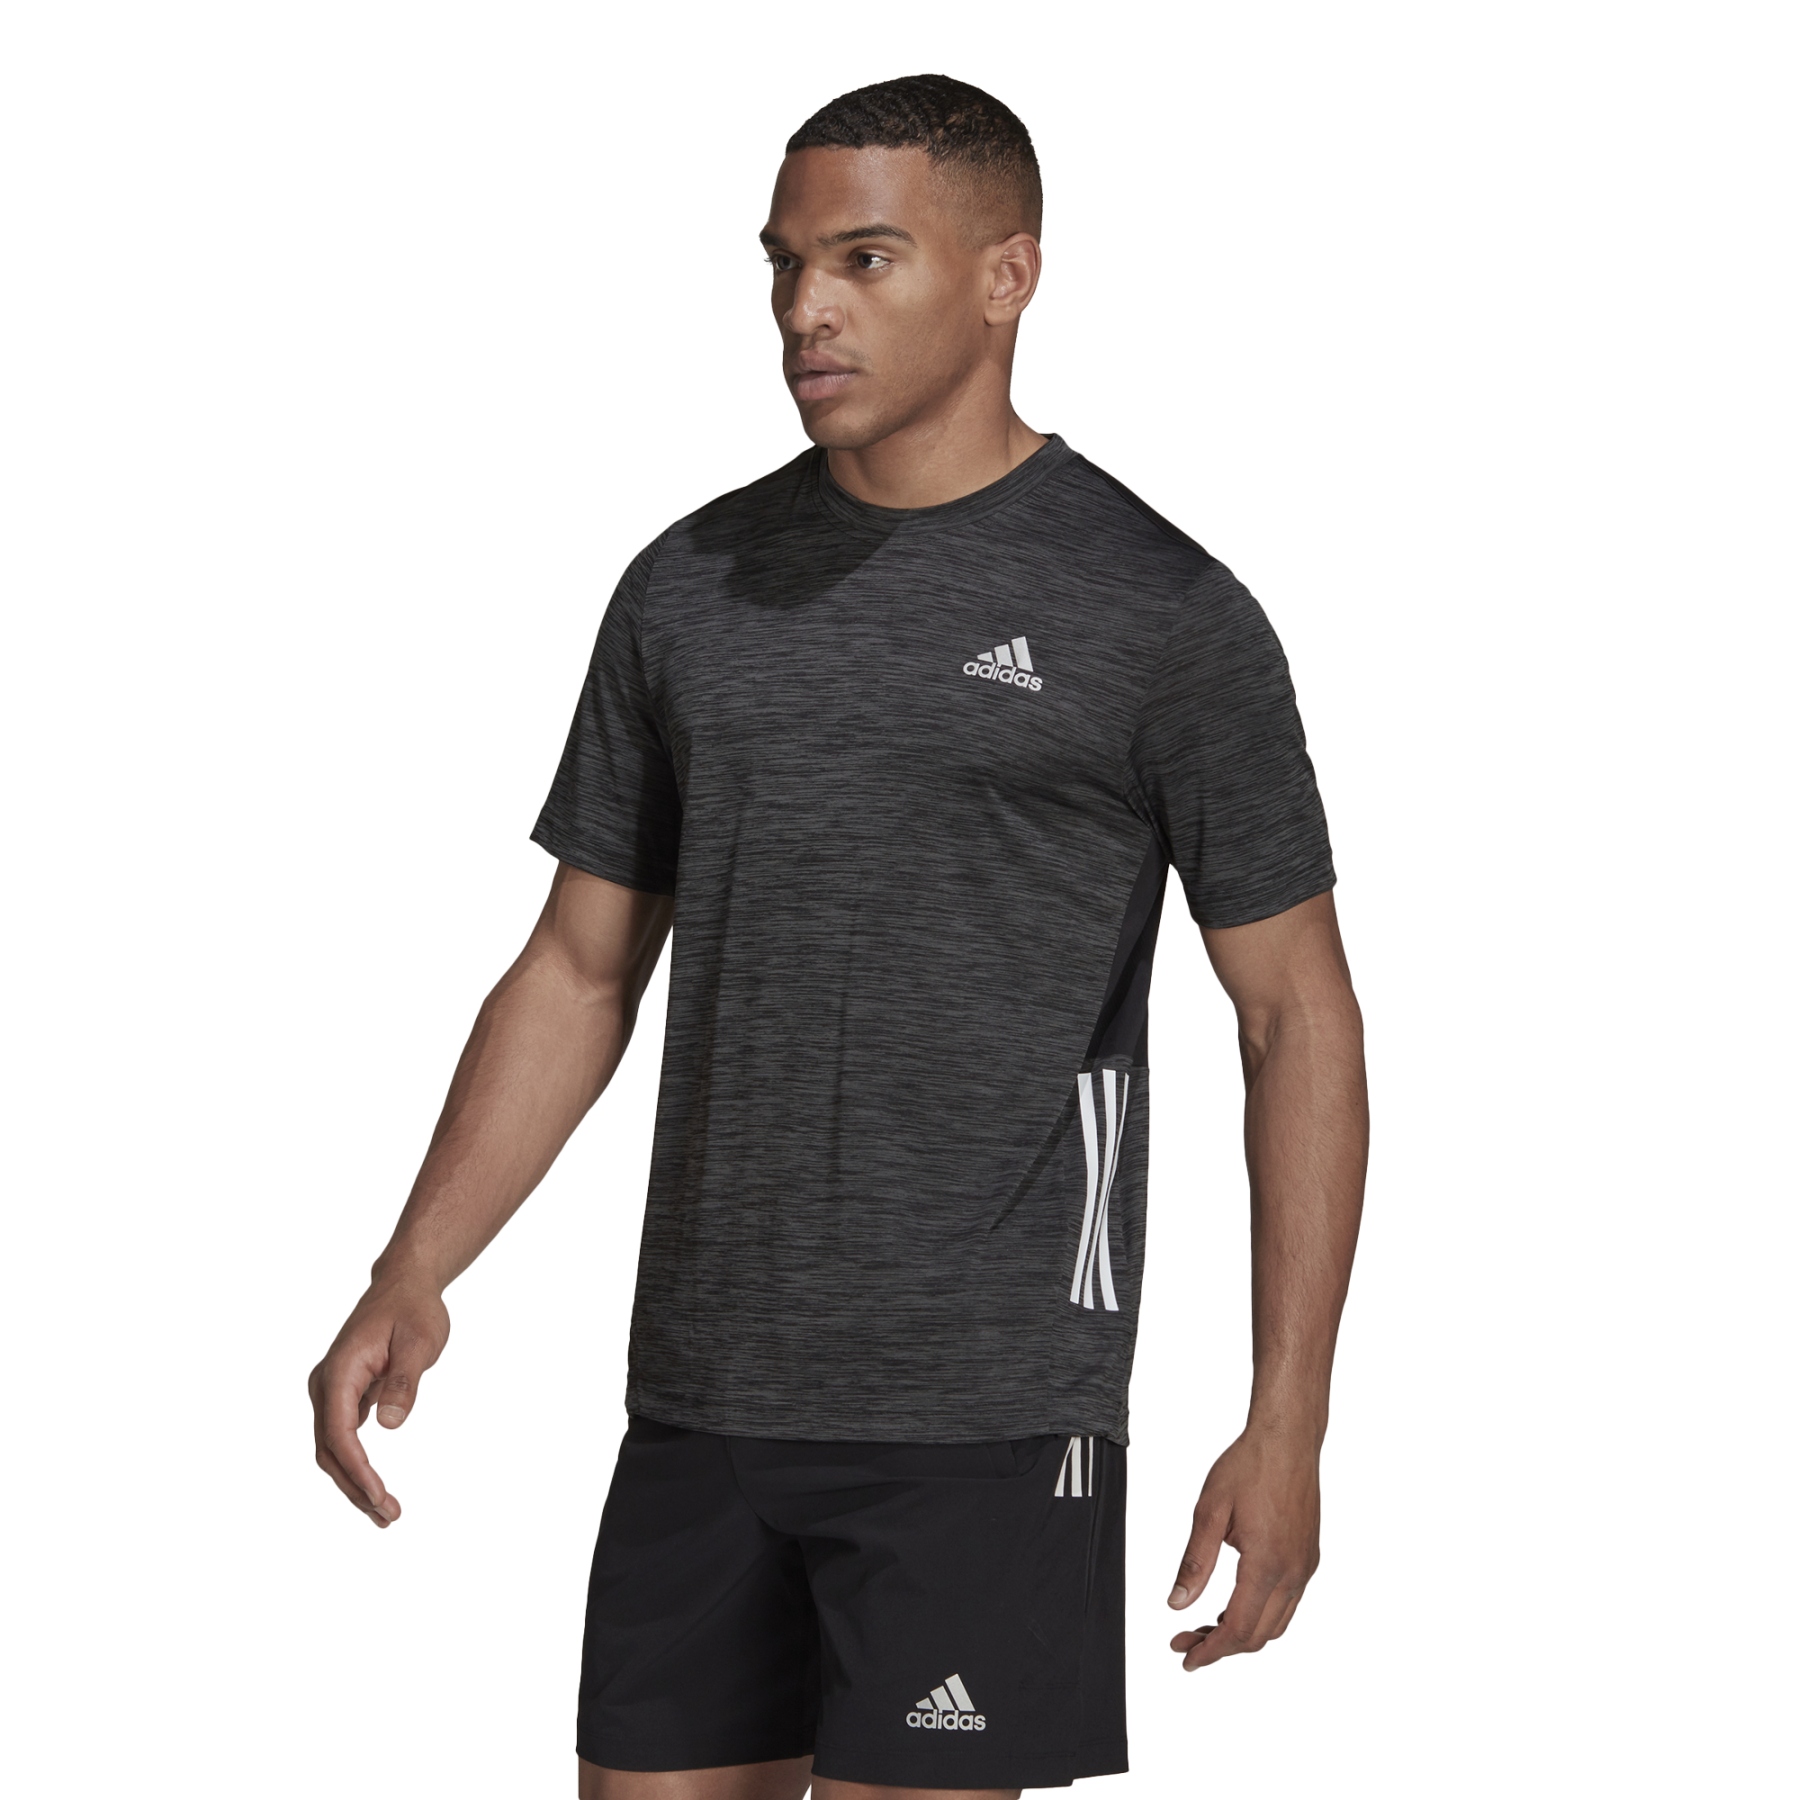 Produktbild von adidas Männer Trainingsshirt - schwarz HF5927